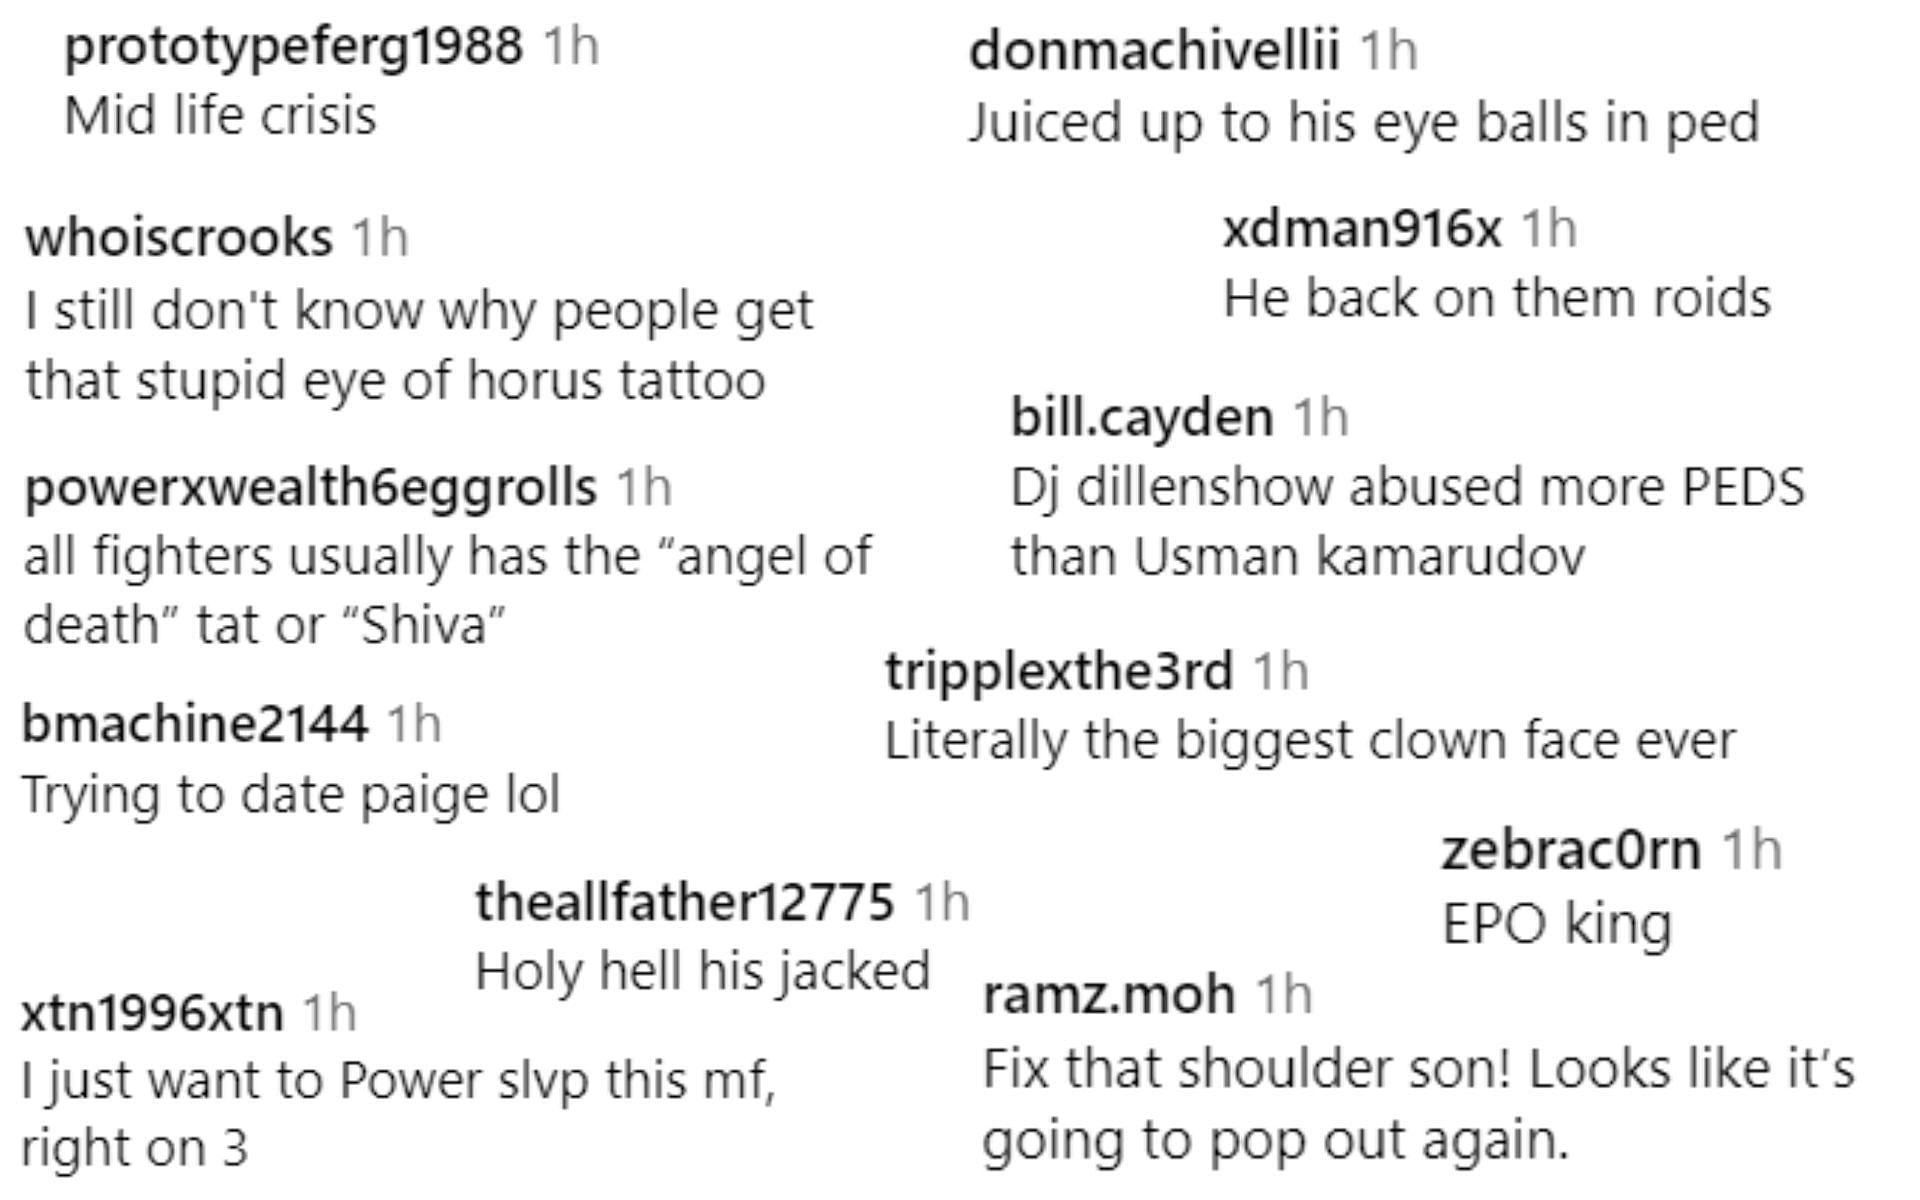 Screenshots of fan reactions